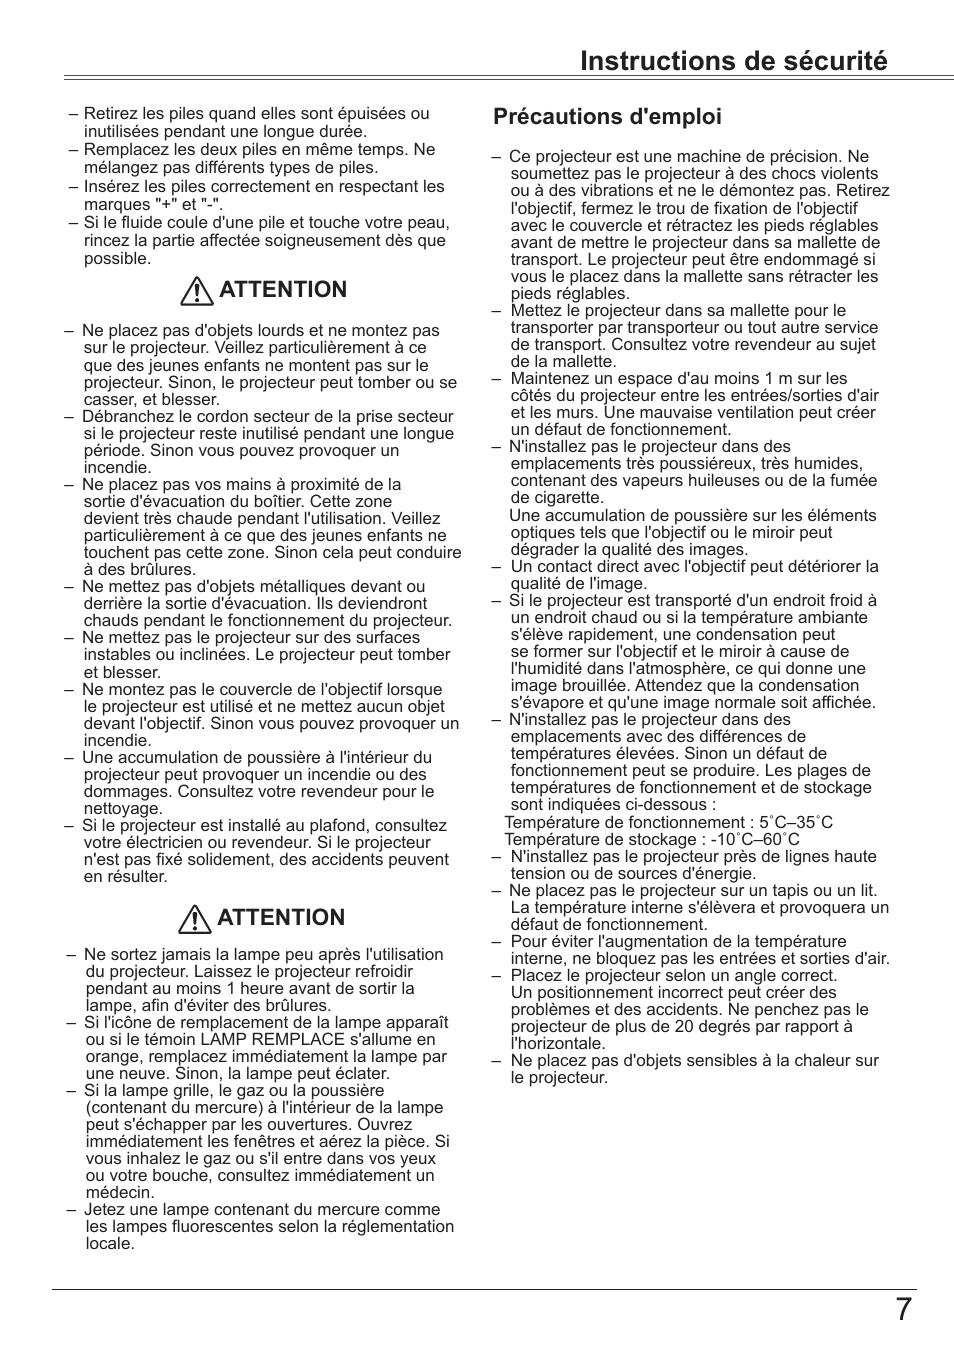 Instructions de sécurité, Précautions d'emploi attention attention | Canon LV-8320 Manuel d'utilisation | Page 7 / 81